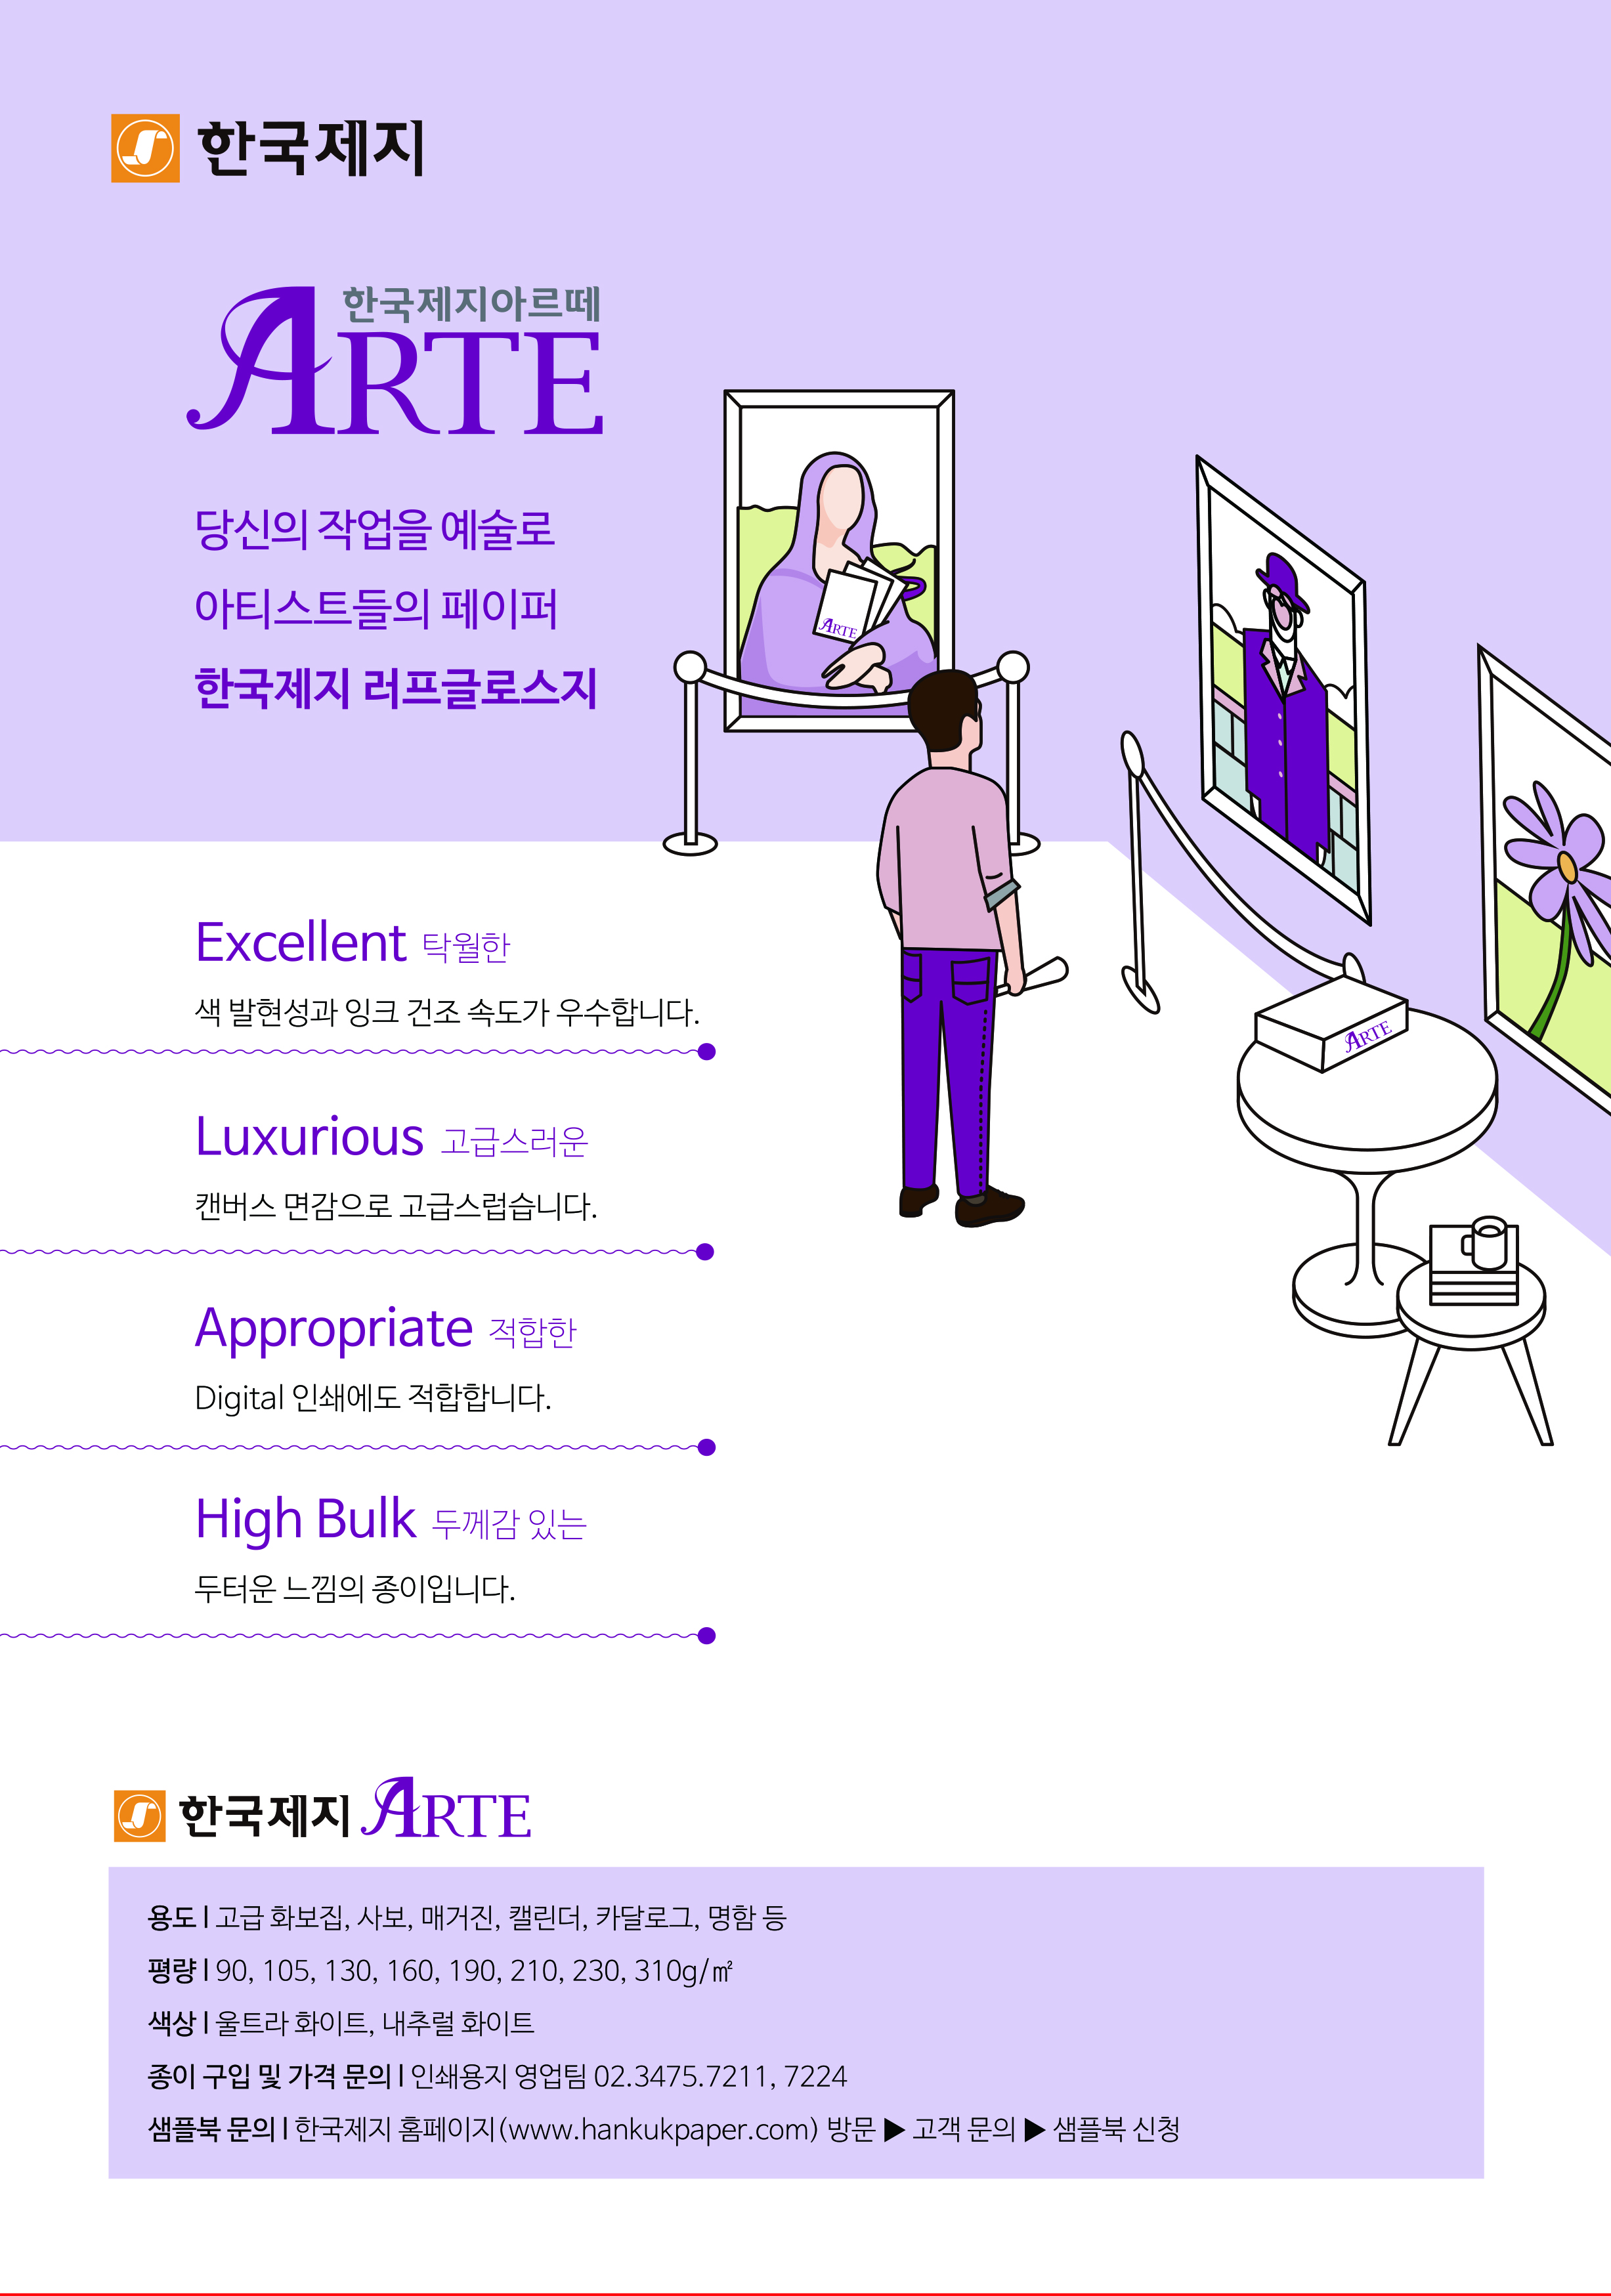 2019년 ARTE 광고